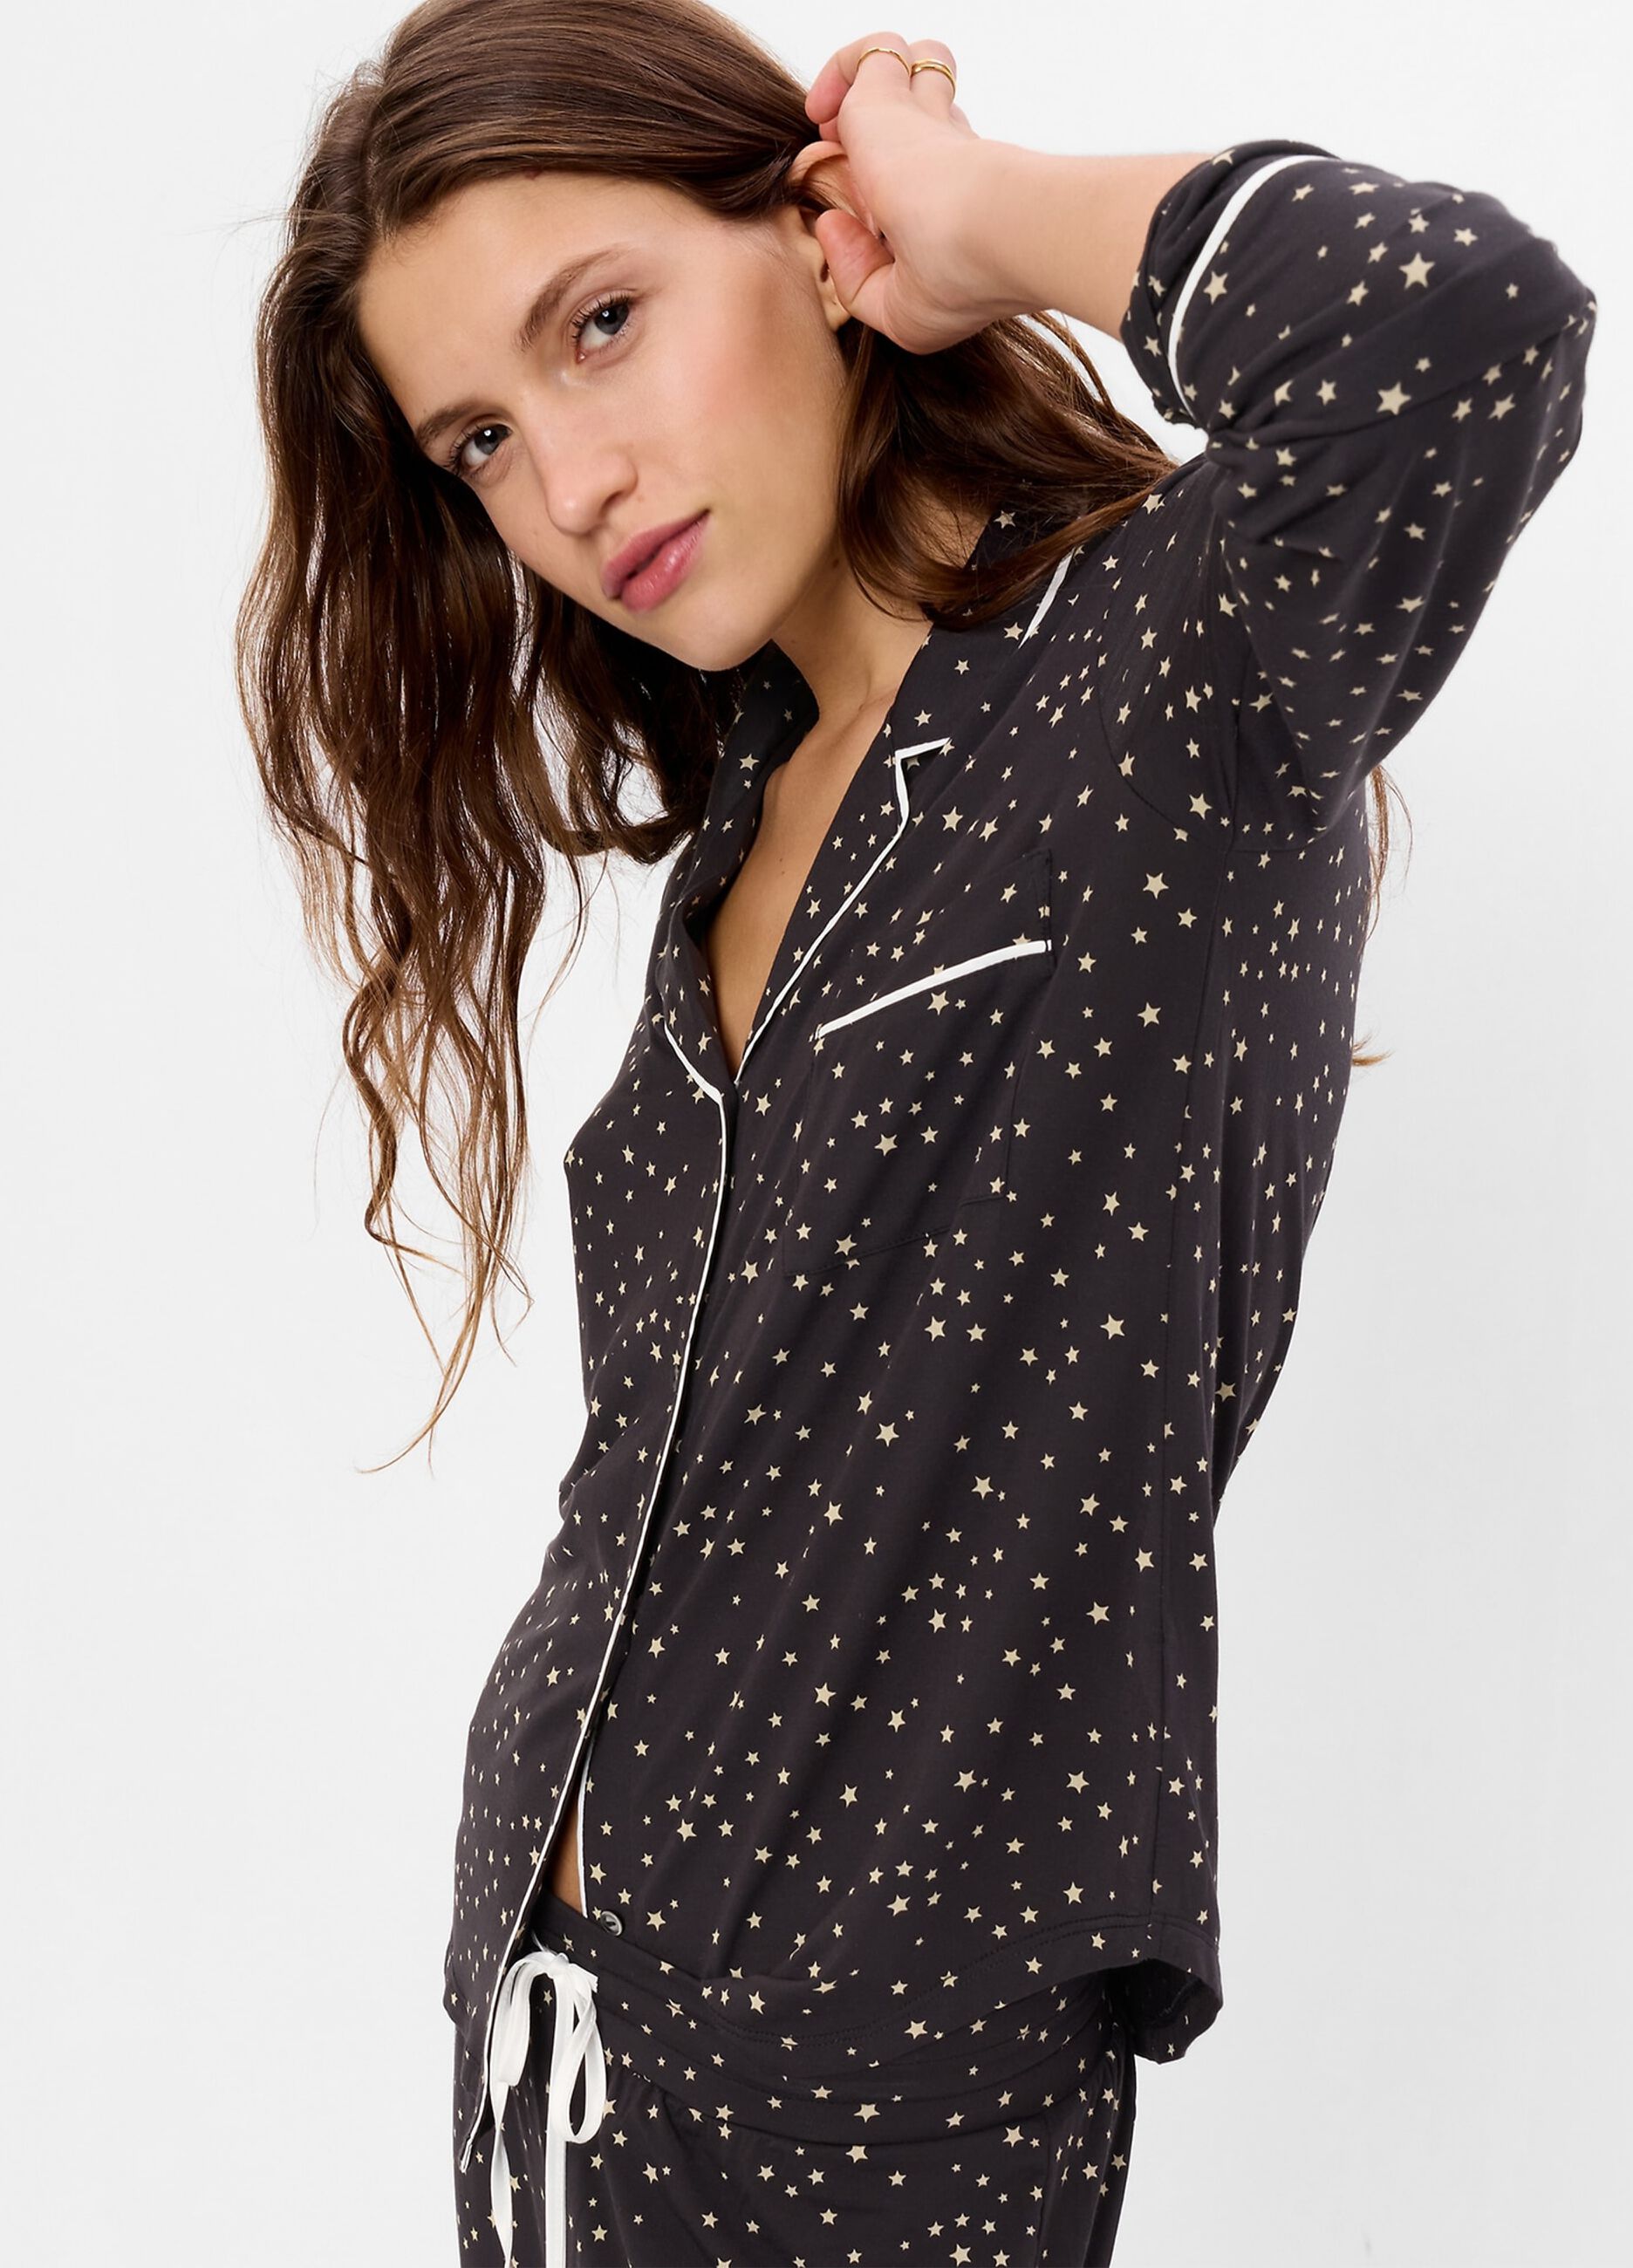 Pyjama top shirt with star print